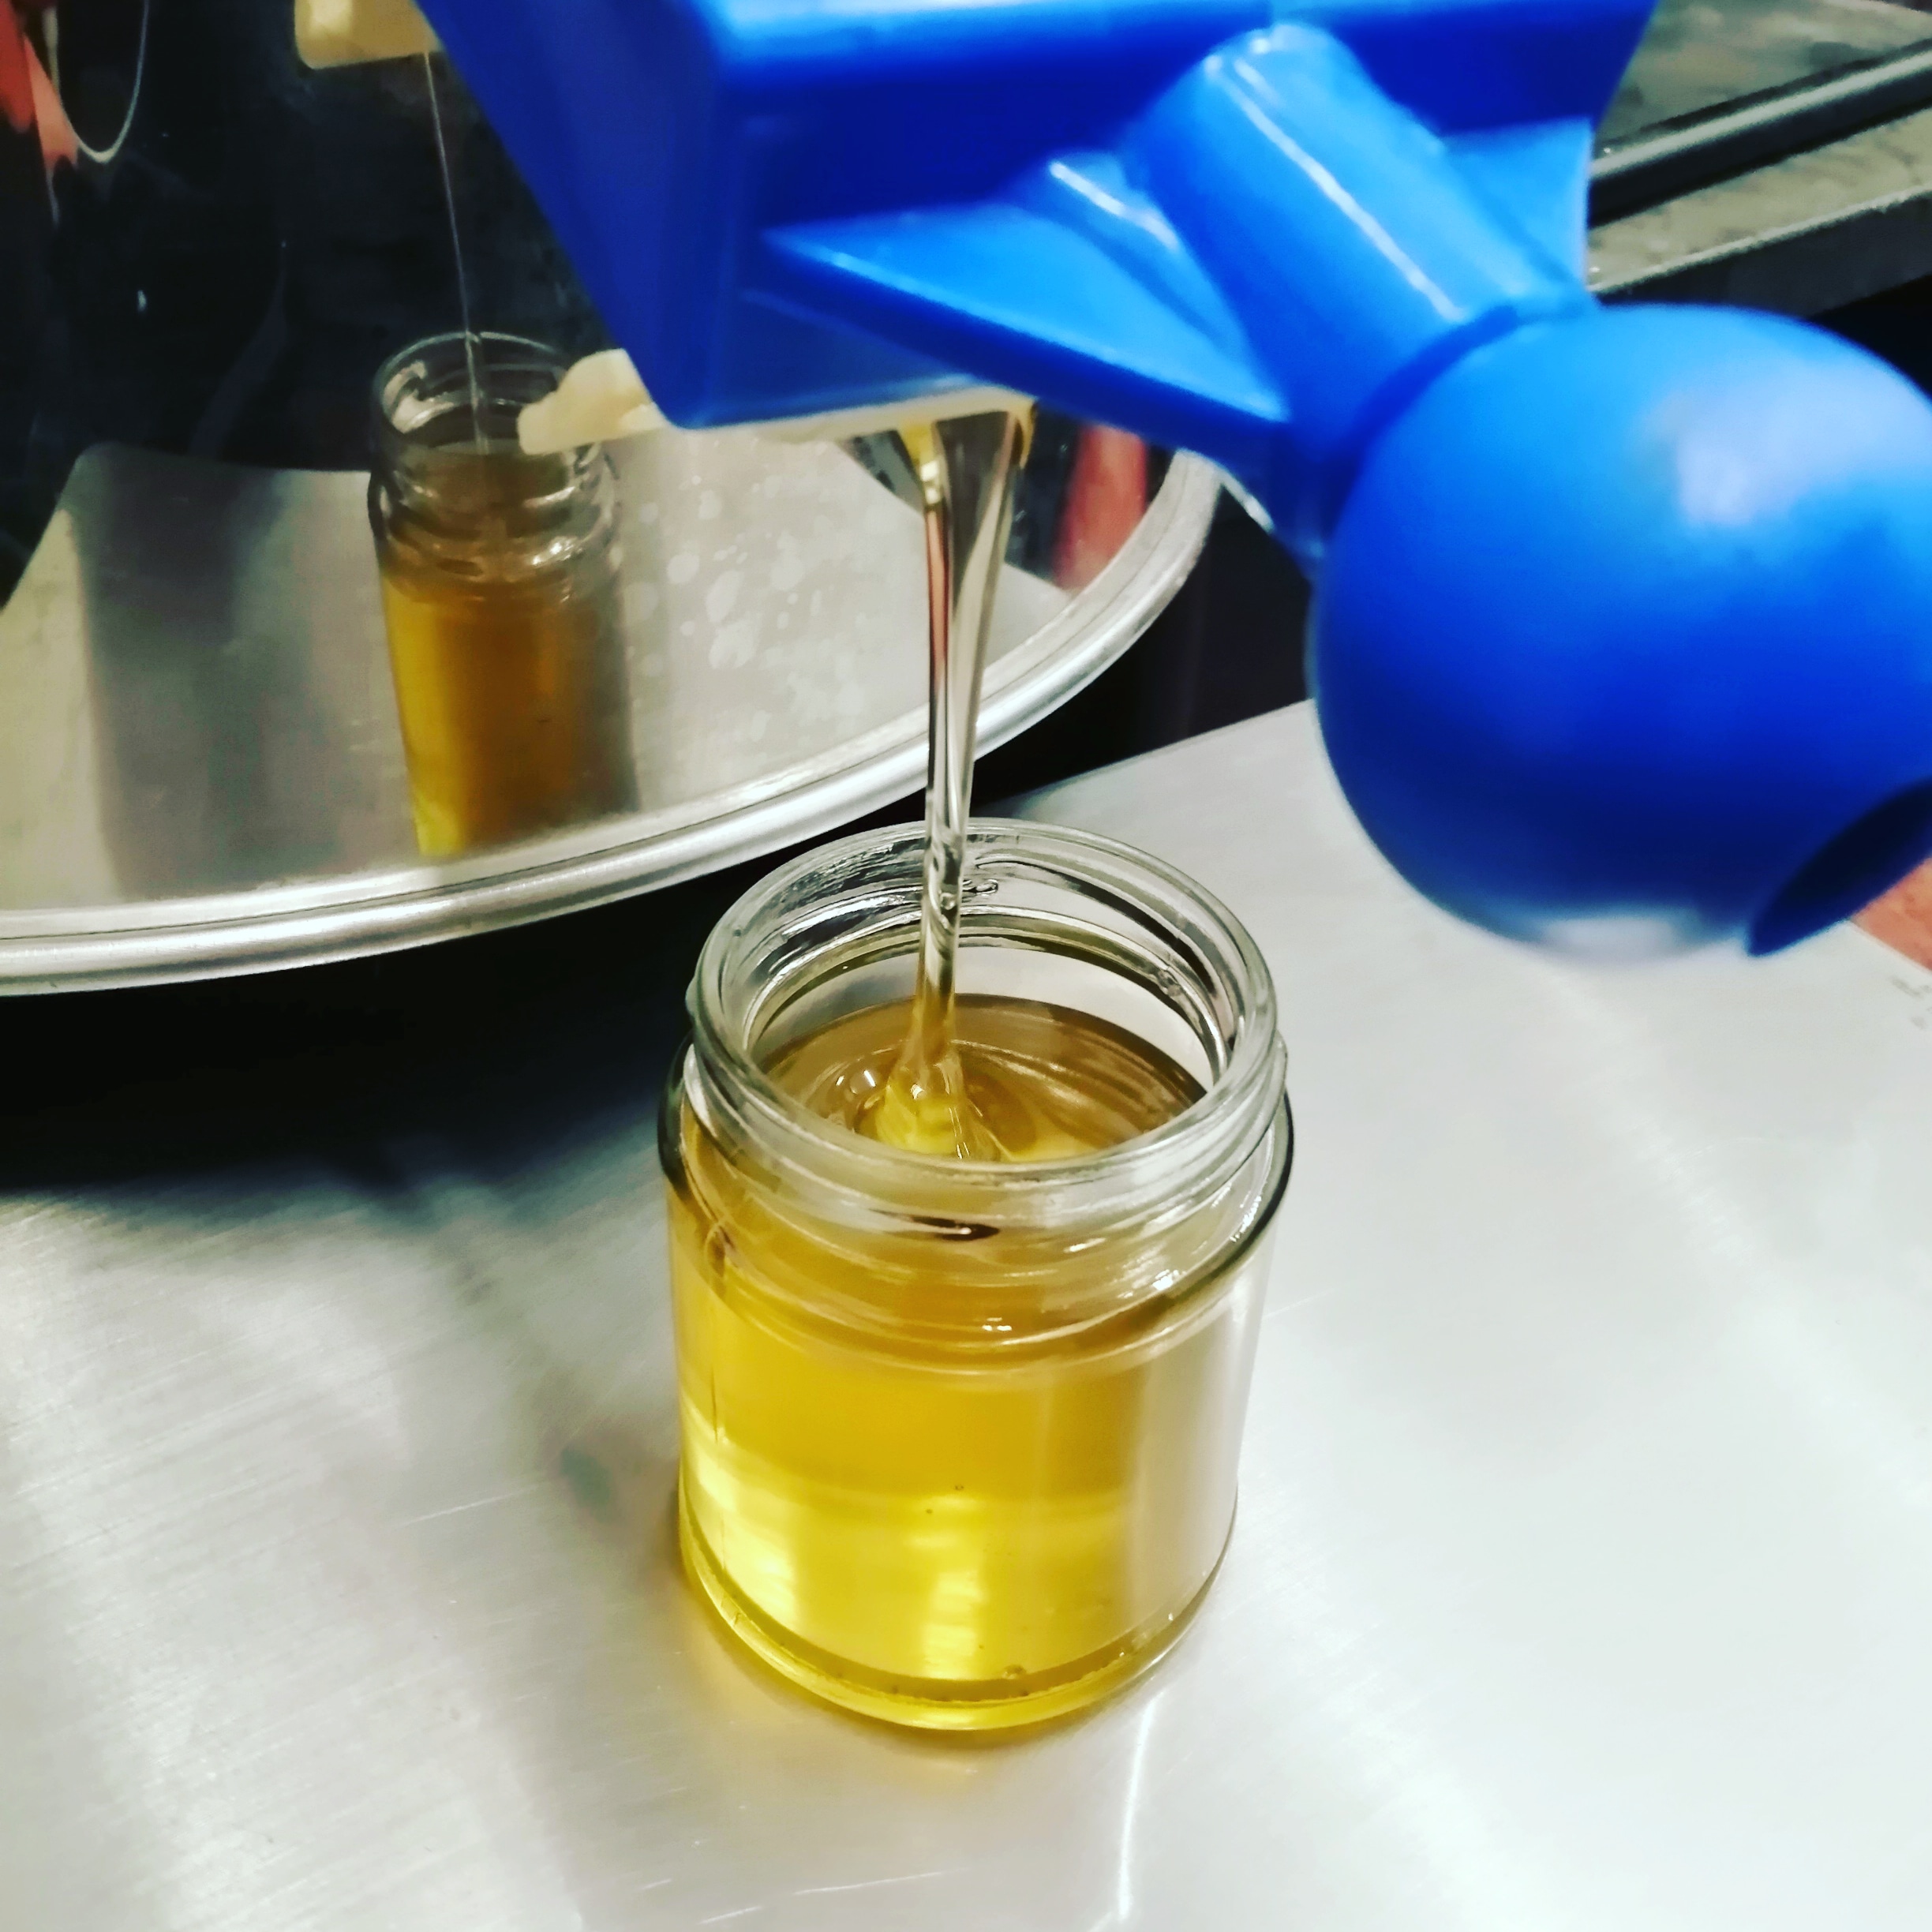 jarring honey